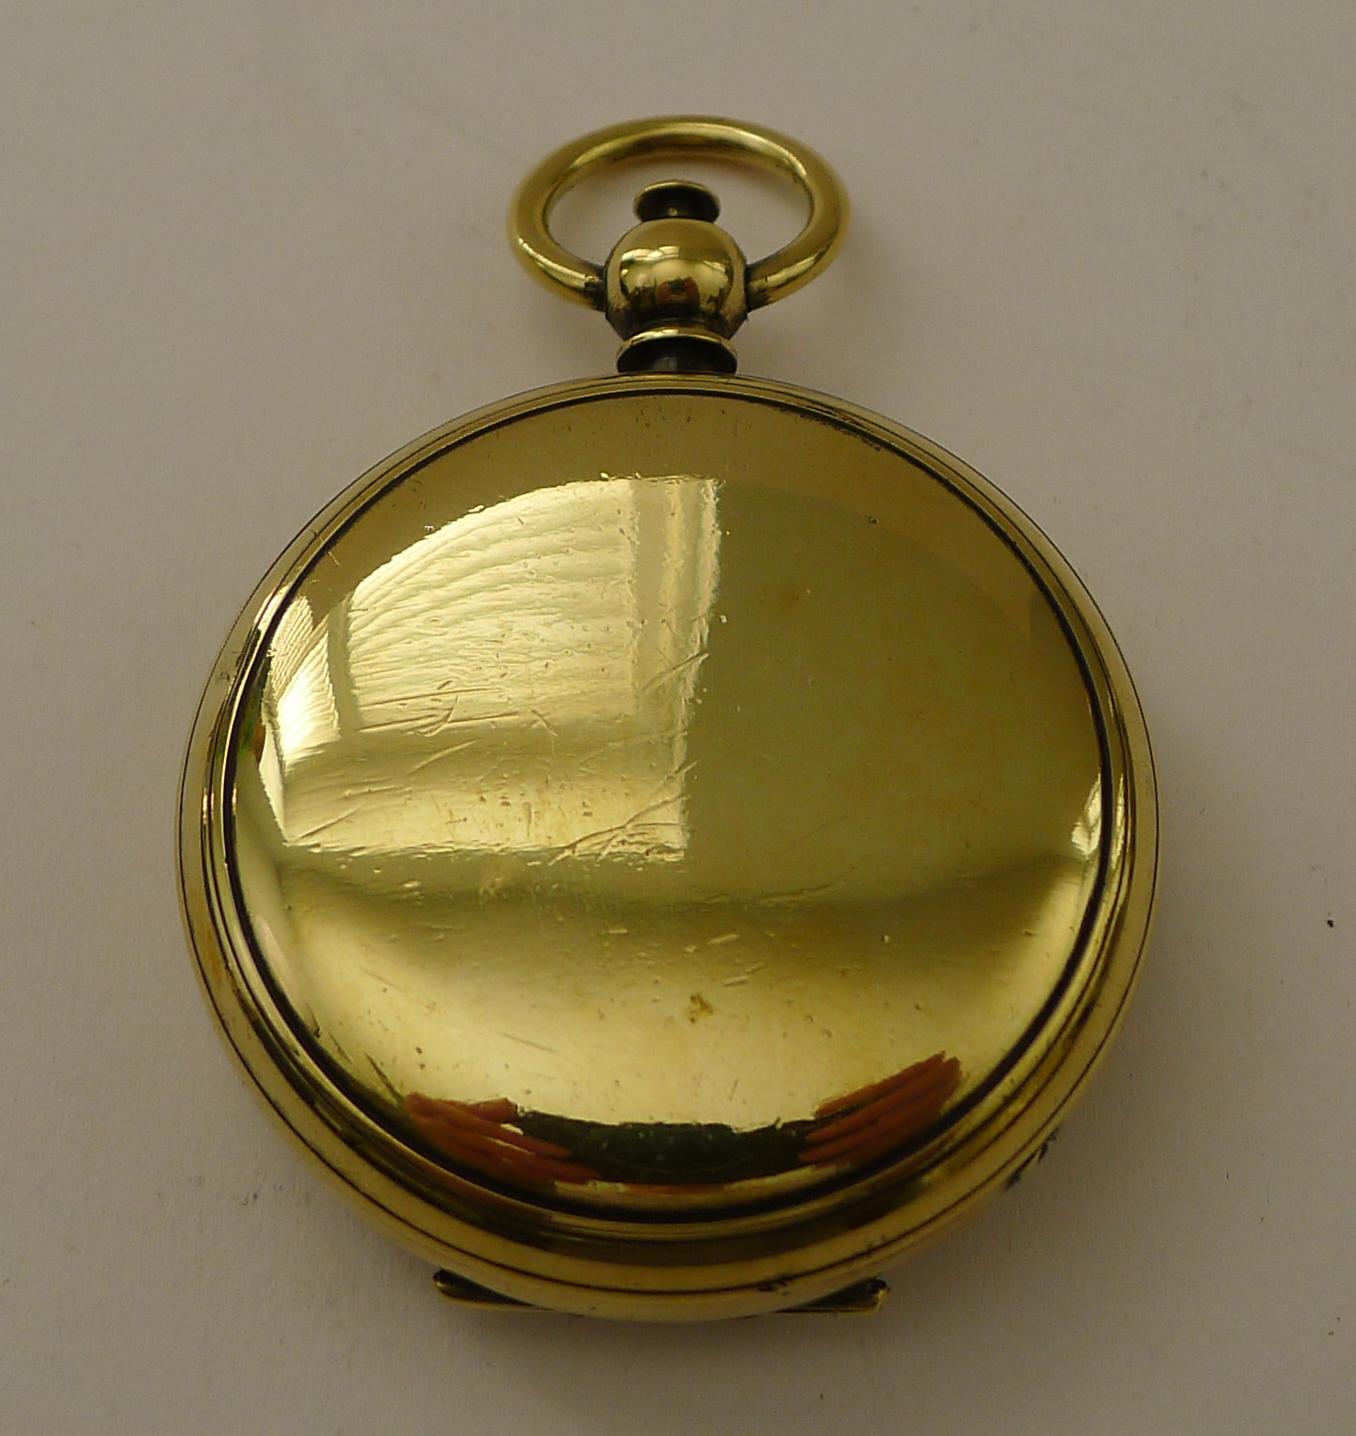 Ein schöner Kompass aus der späten viktorianischen oder edwardianischen Zeit mit Klappdeckel, der mit einem kleinen Knopf an der Oberseite geöffnet werden kann; genau wie eine Taschenuhr.

Das Zifferblatt hat das Glück, eine englische